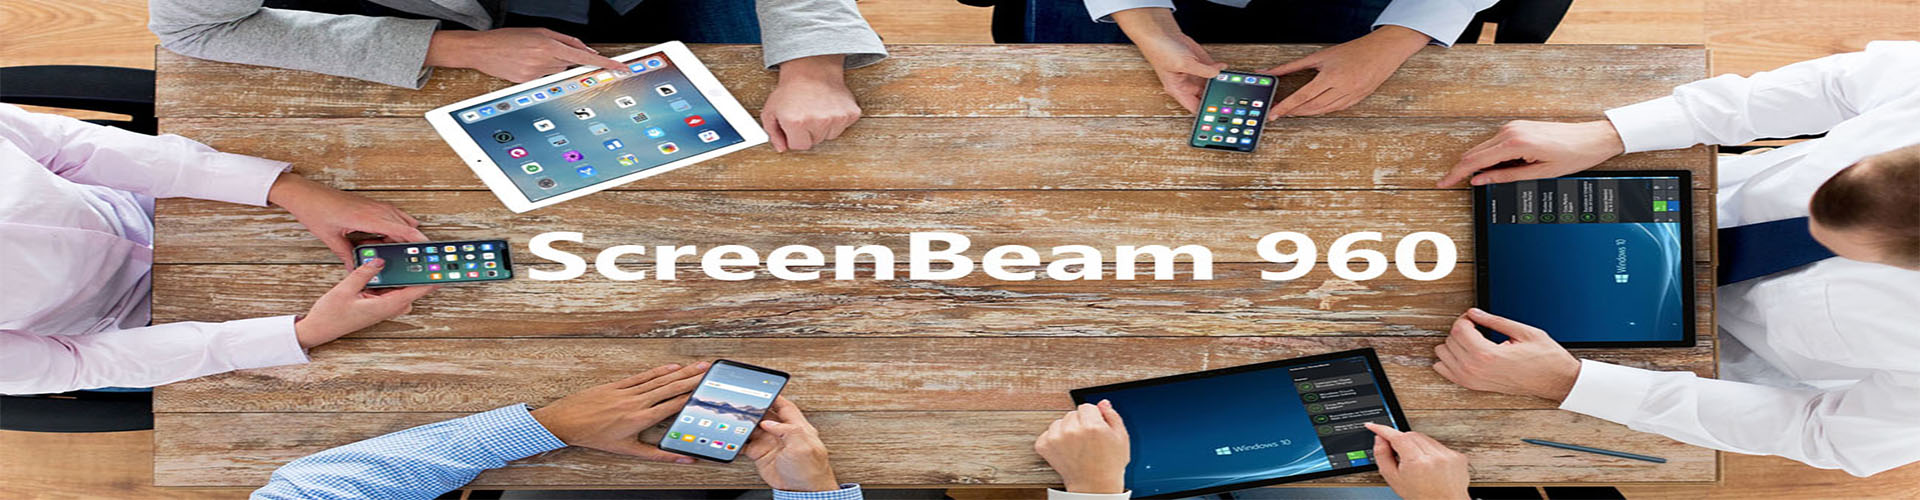 ScreenBeam 960 - Thiết bị chia sẻ không dây hoàn hảo cho các doanh nghiệp nhỏ